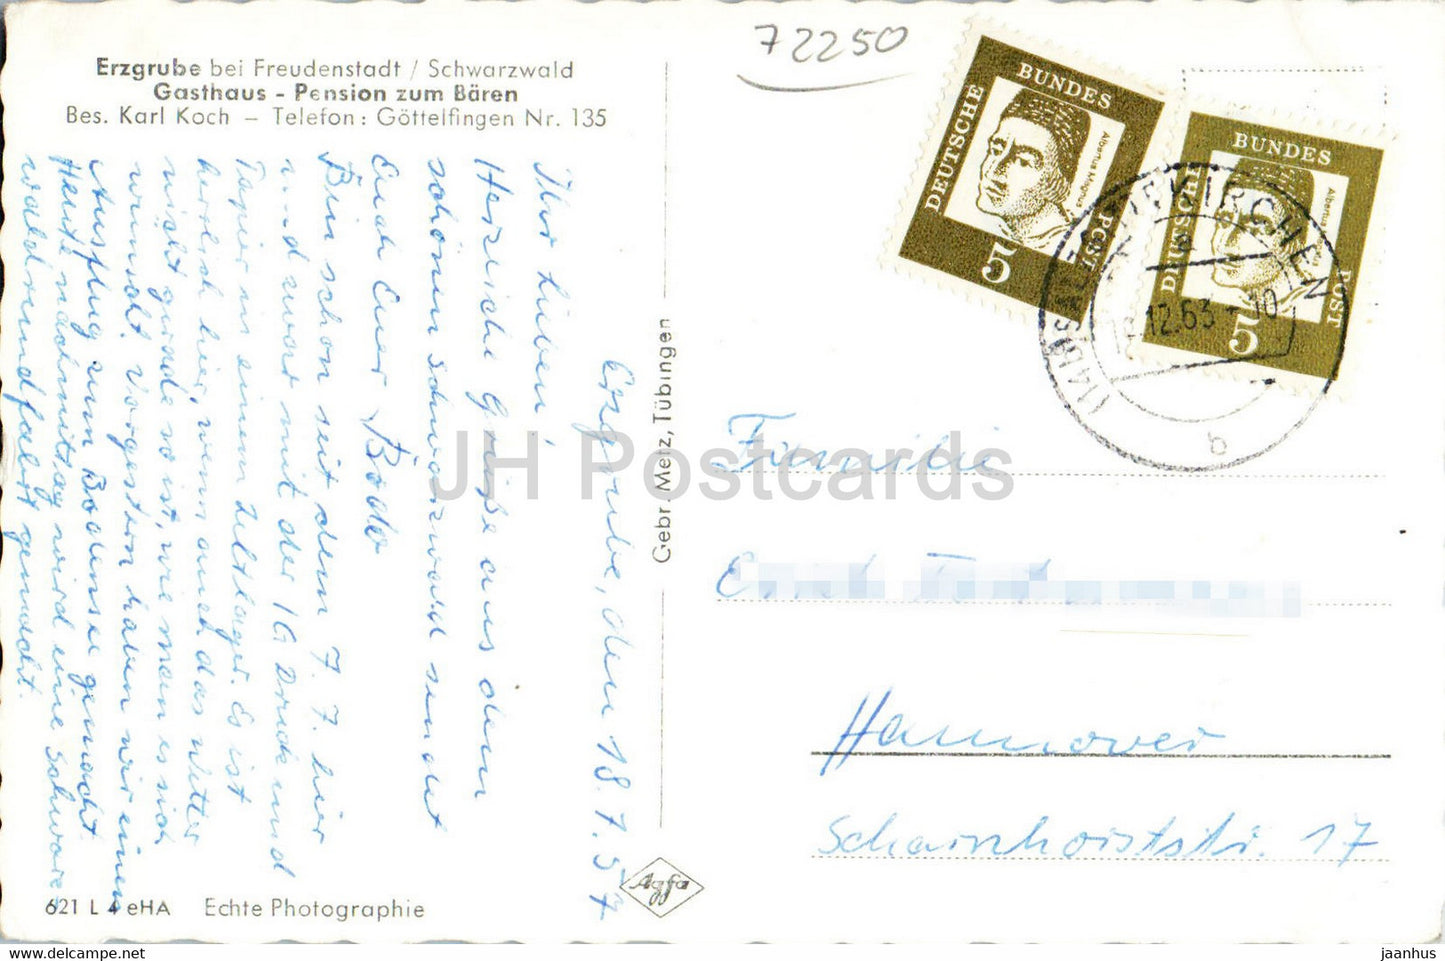 Erzgrube bei Freudenstadt - Gasthaus - Pension zum Bären - alte Postkarte - 1957 - Deutschland - gebraucht